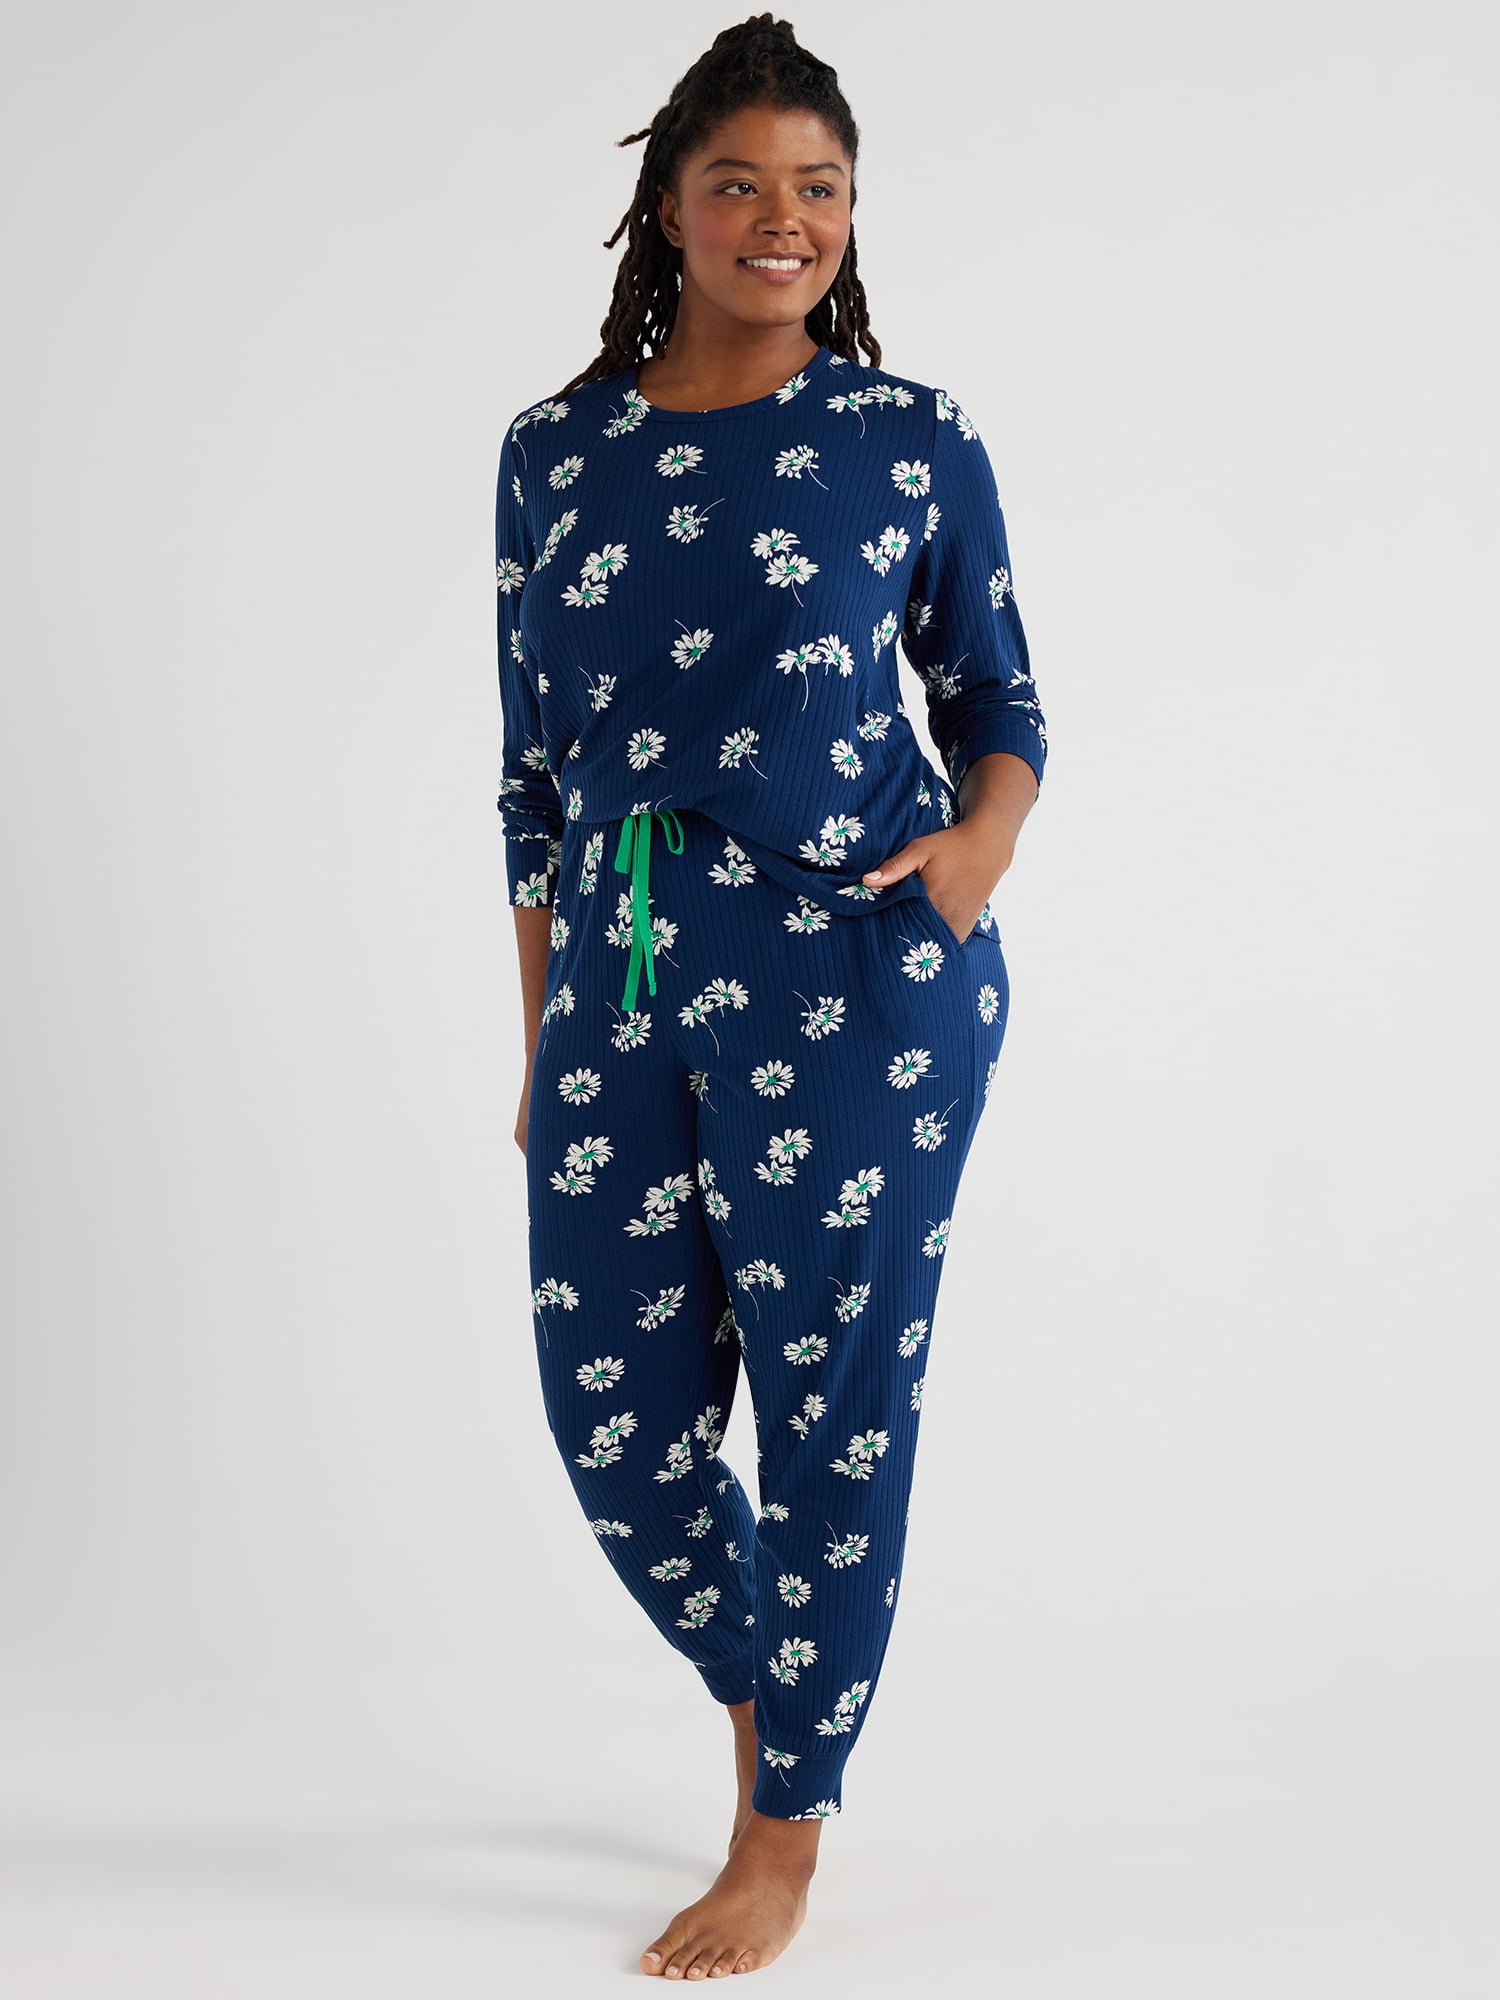 Joyspun Women’s Ribbed Top and Pants Pajama Set, Sizes S-3X - Walmart.com